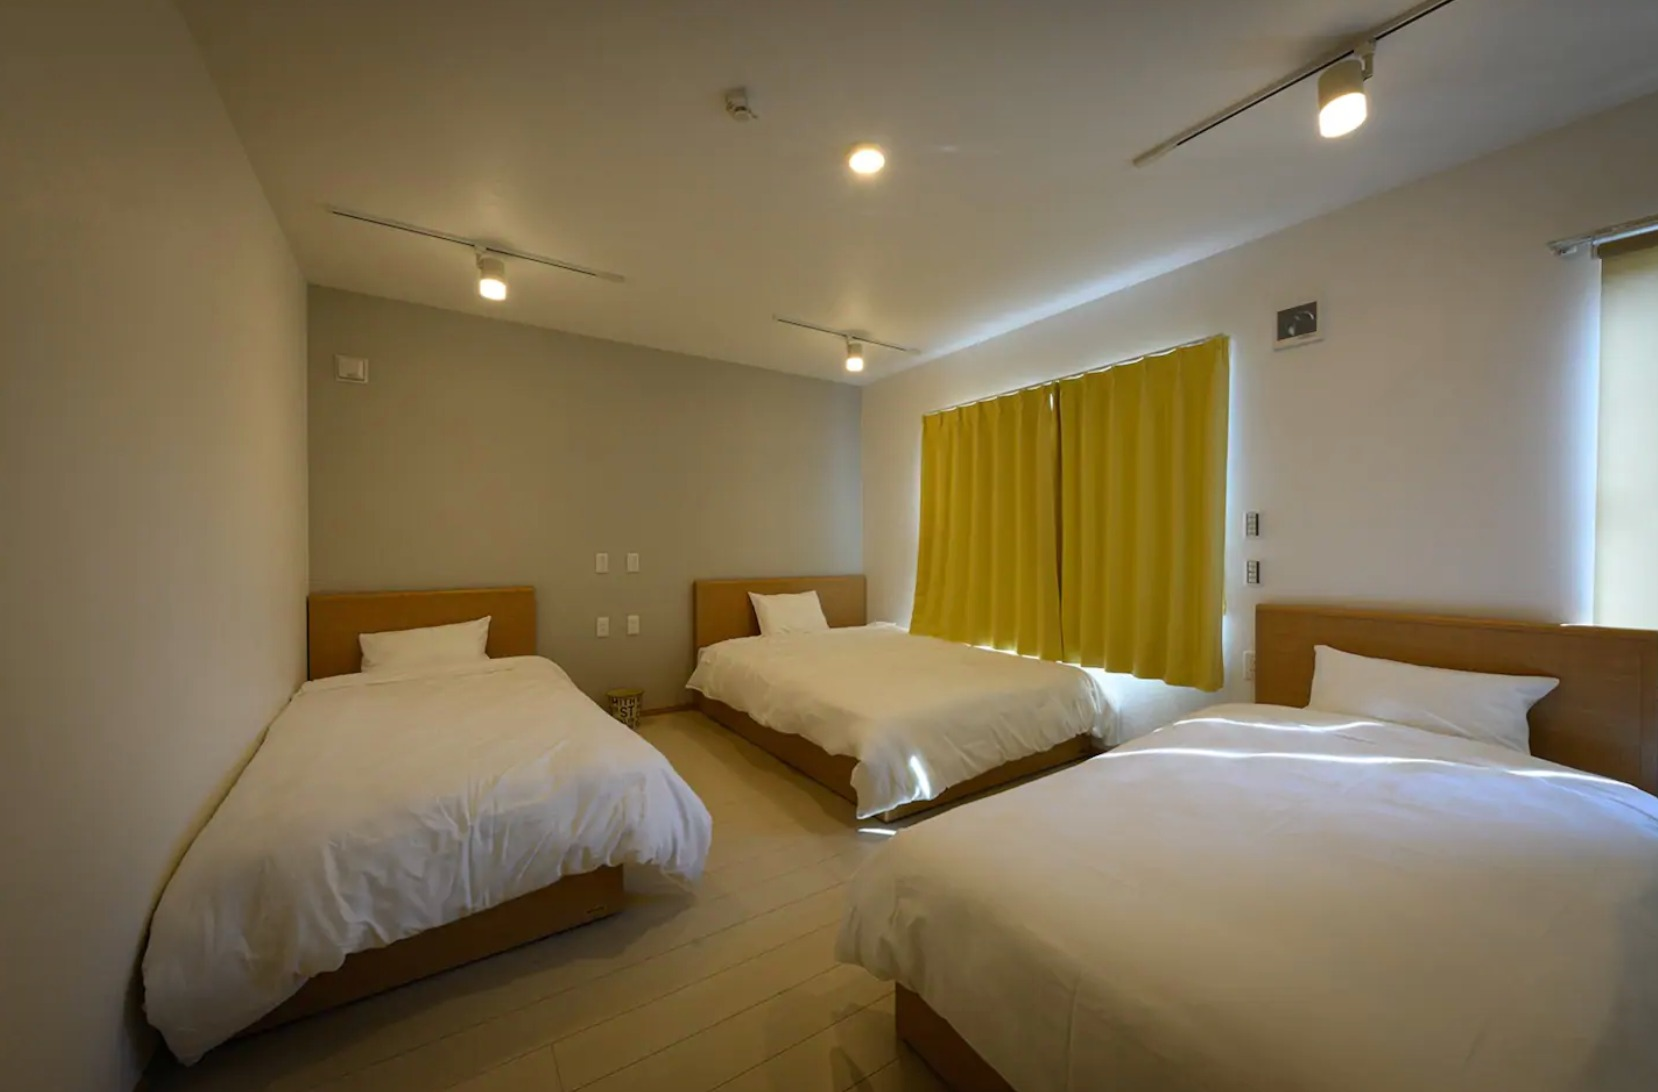 寝室は2つ、各部屋にダブルベッド1台、シングルベッド2台